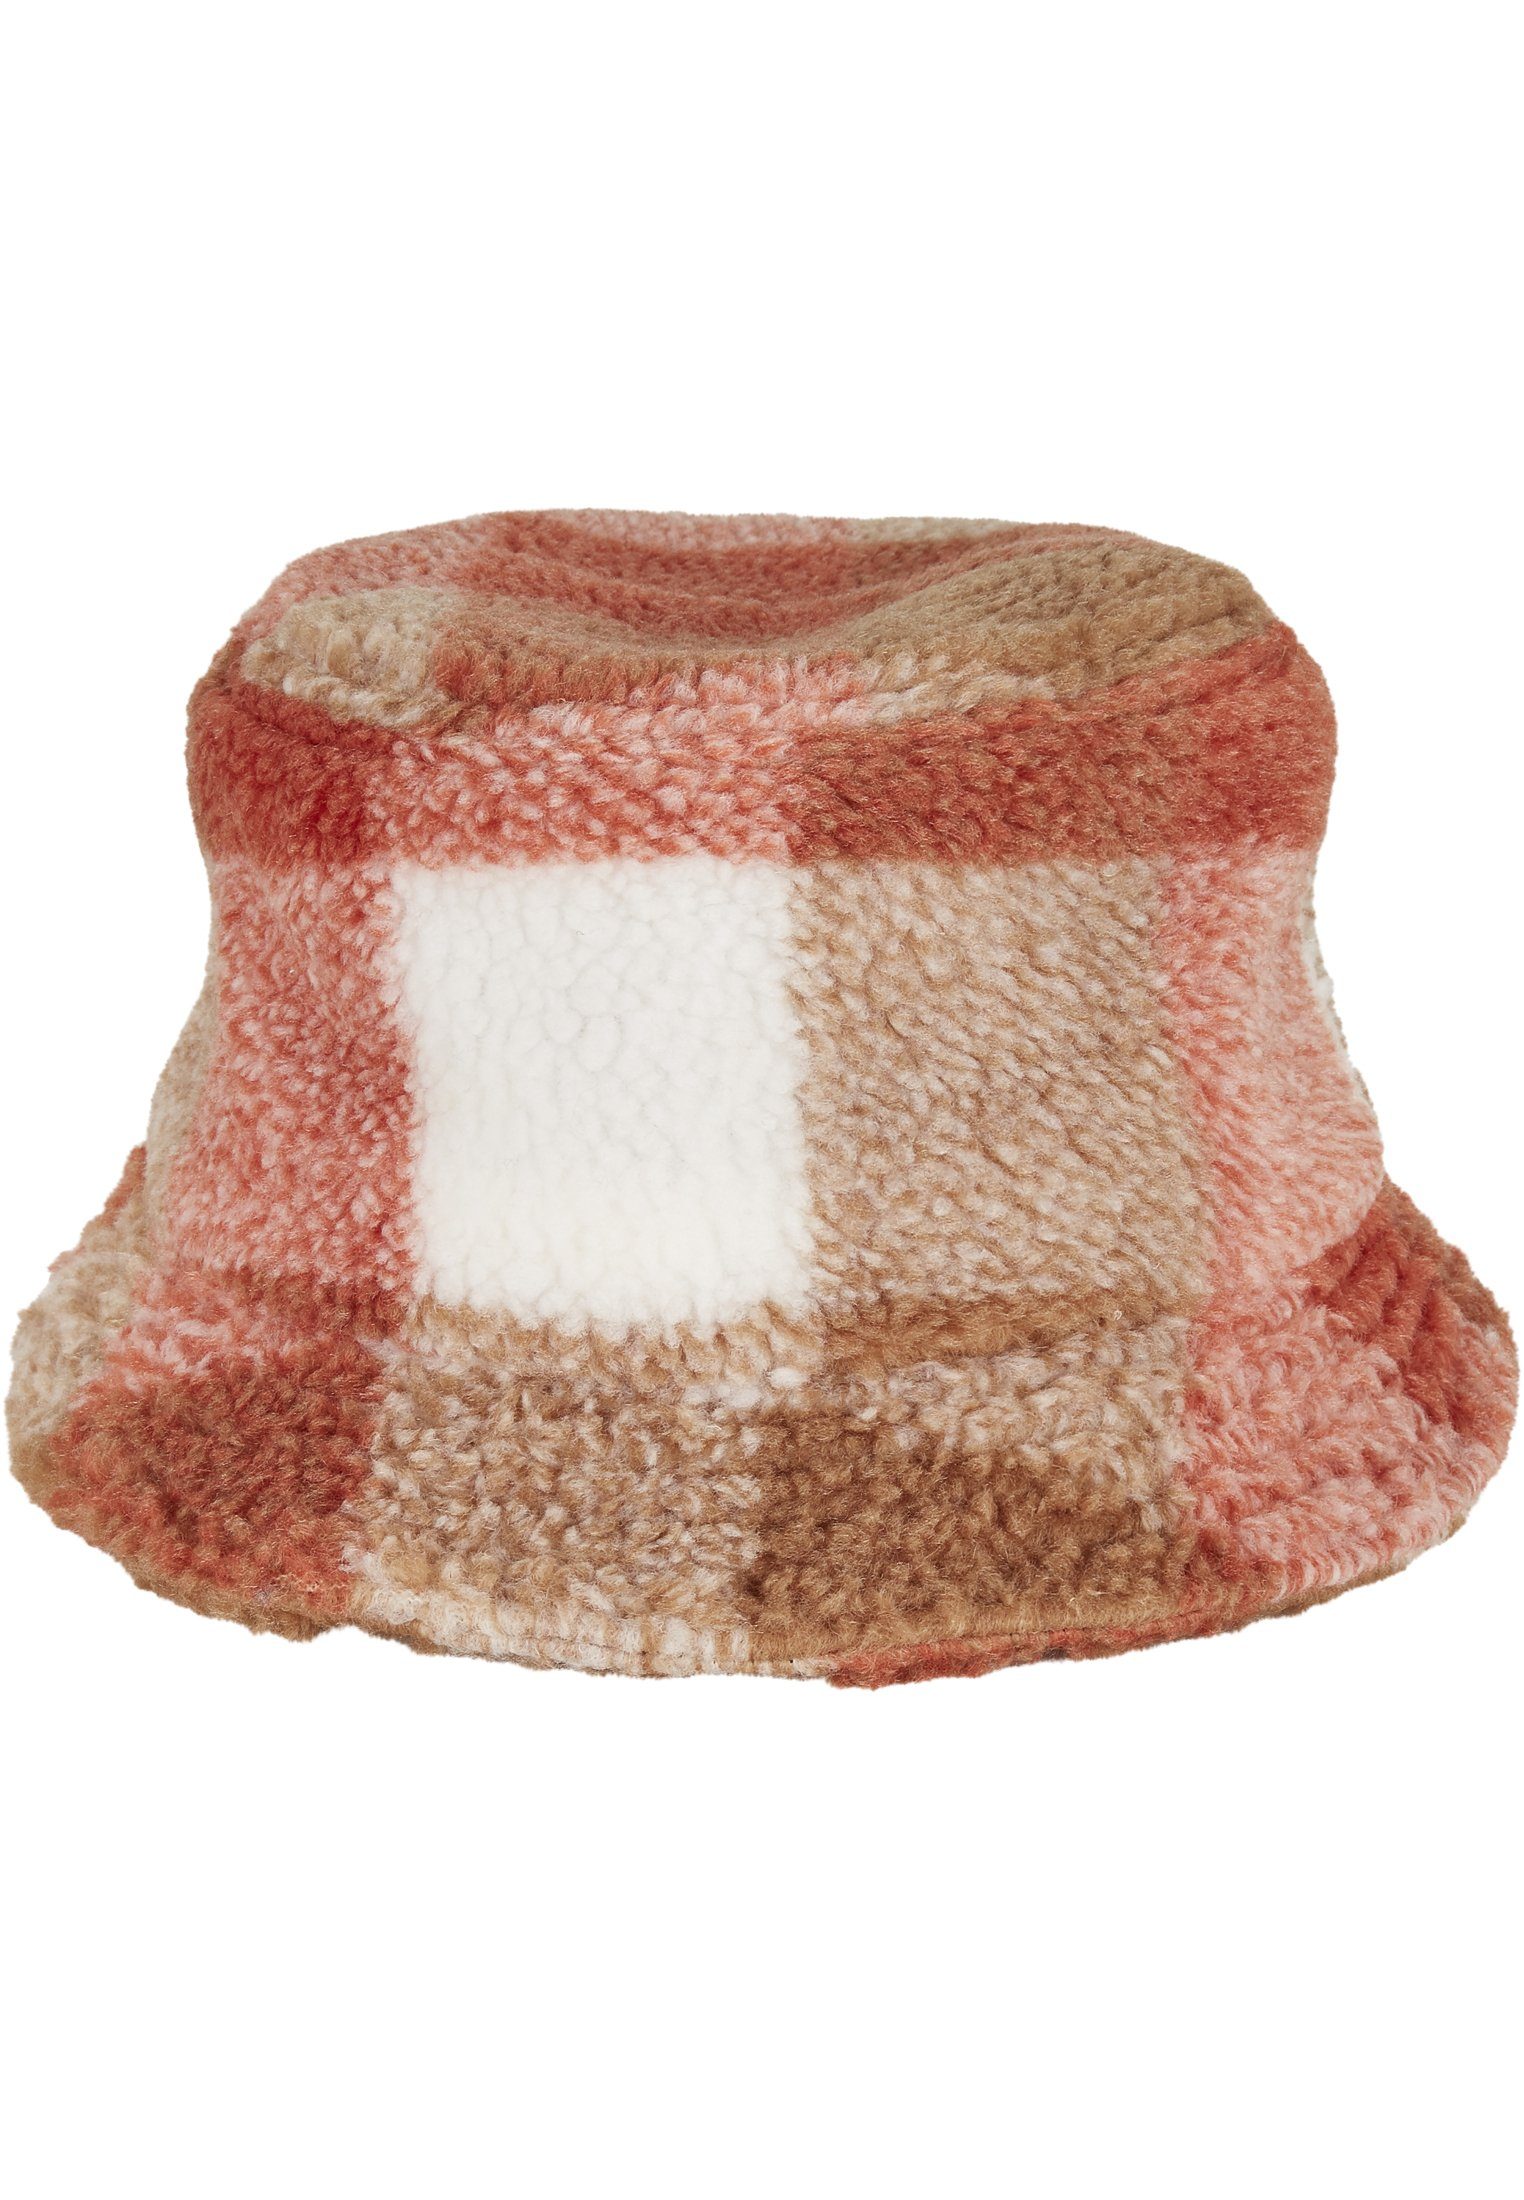 Sherpa Bucket Hat whitesand/toffee Hat Flex Check Flexfit Cap Bucket